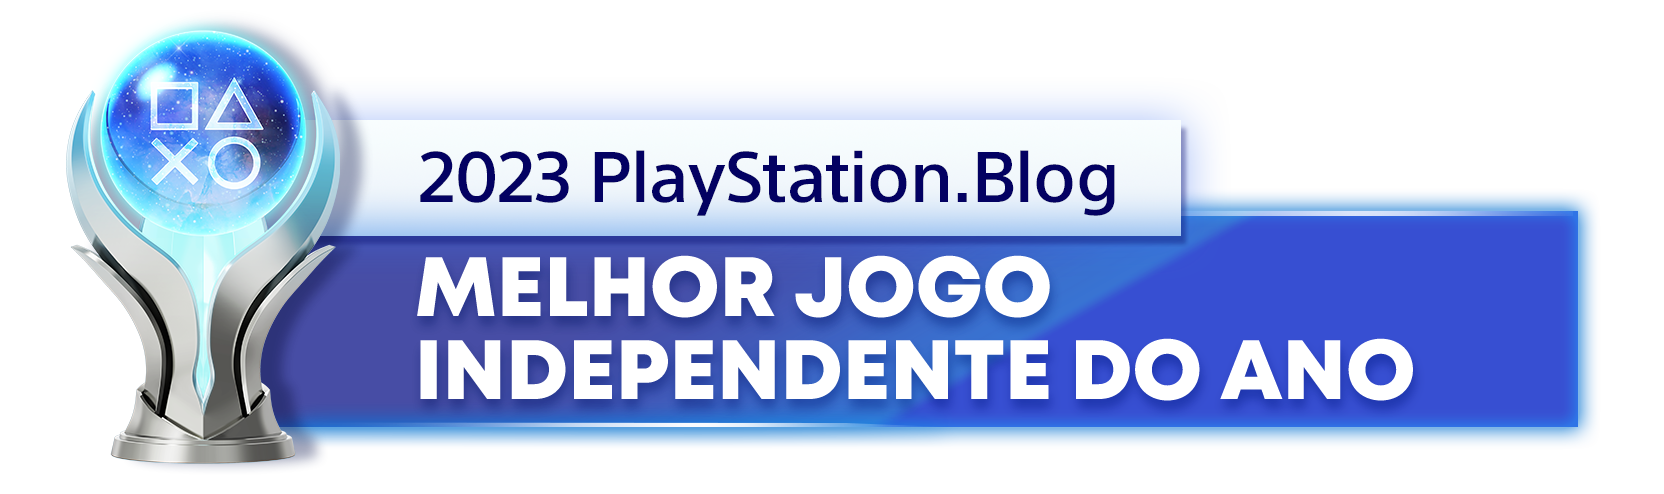  "Troféu de Platina para o vencedor da categoria Melhor Jogo Independente do Ano de 2023 do PlayStation Blog"